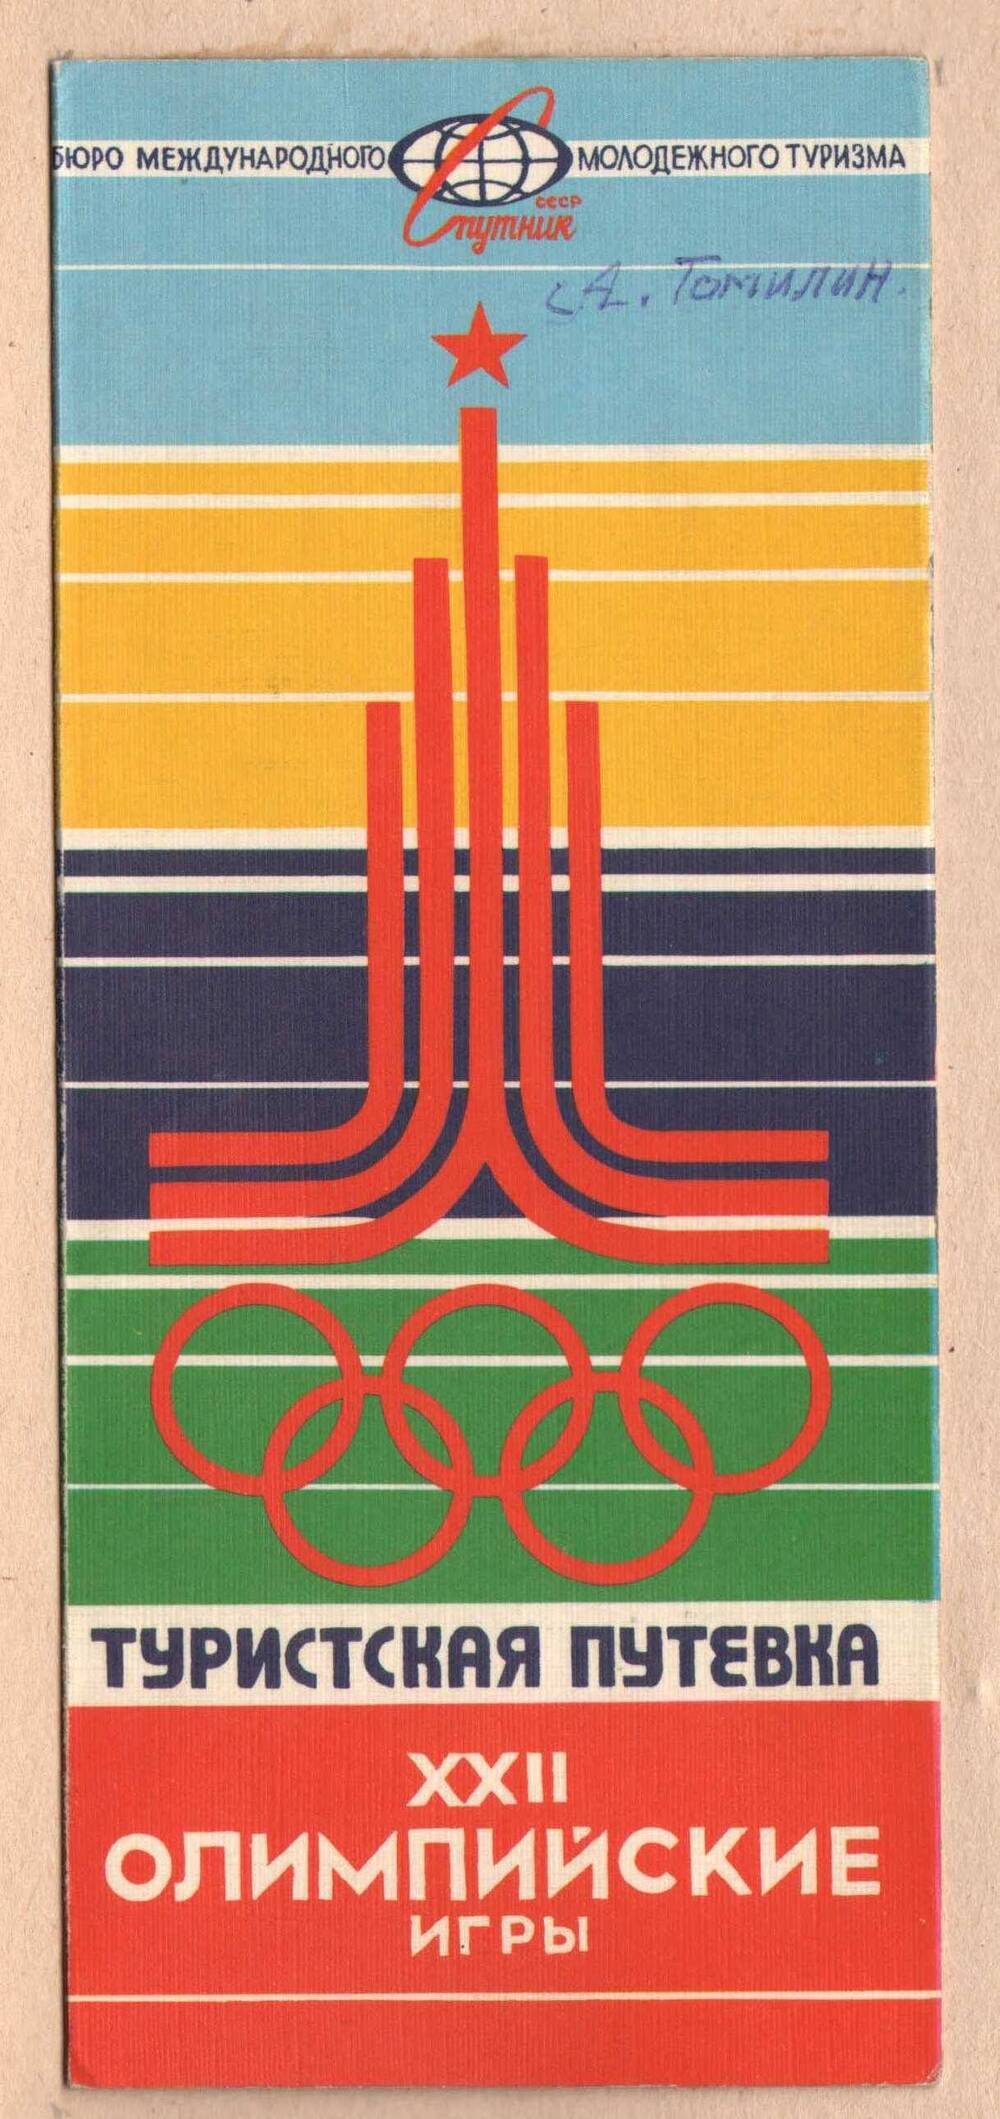 Туристическая путевка Томилину А.И. для посещения ХХII олимпийских игр в Москве 1980 года